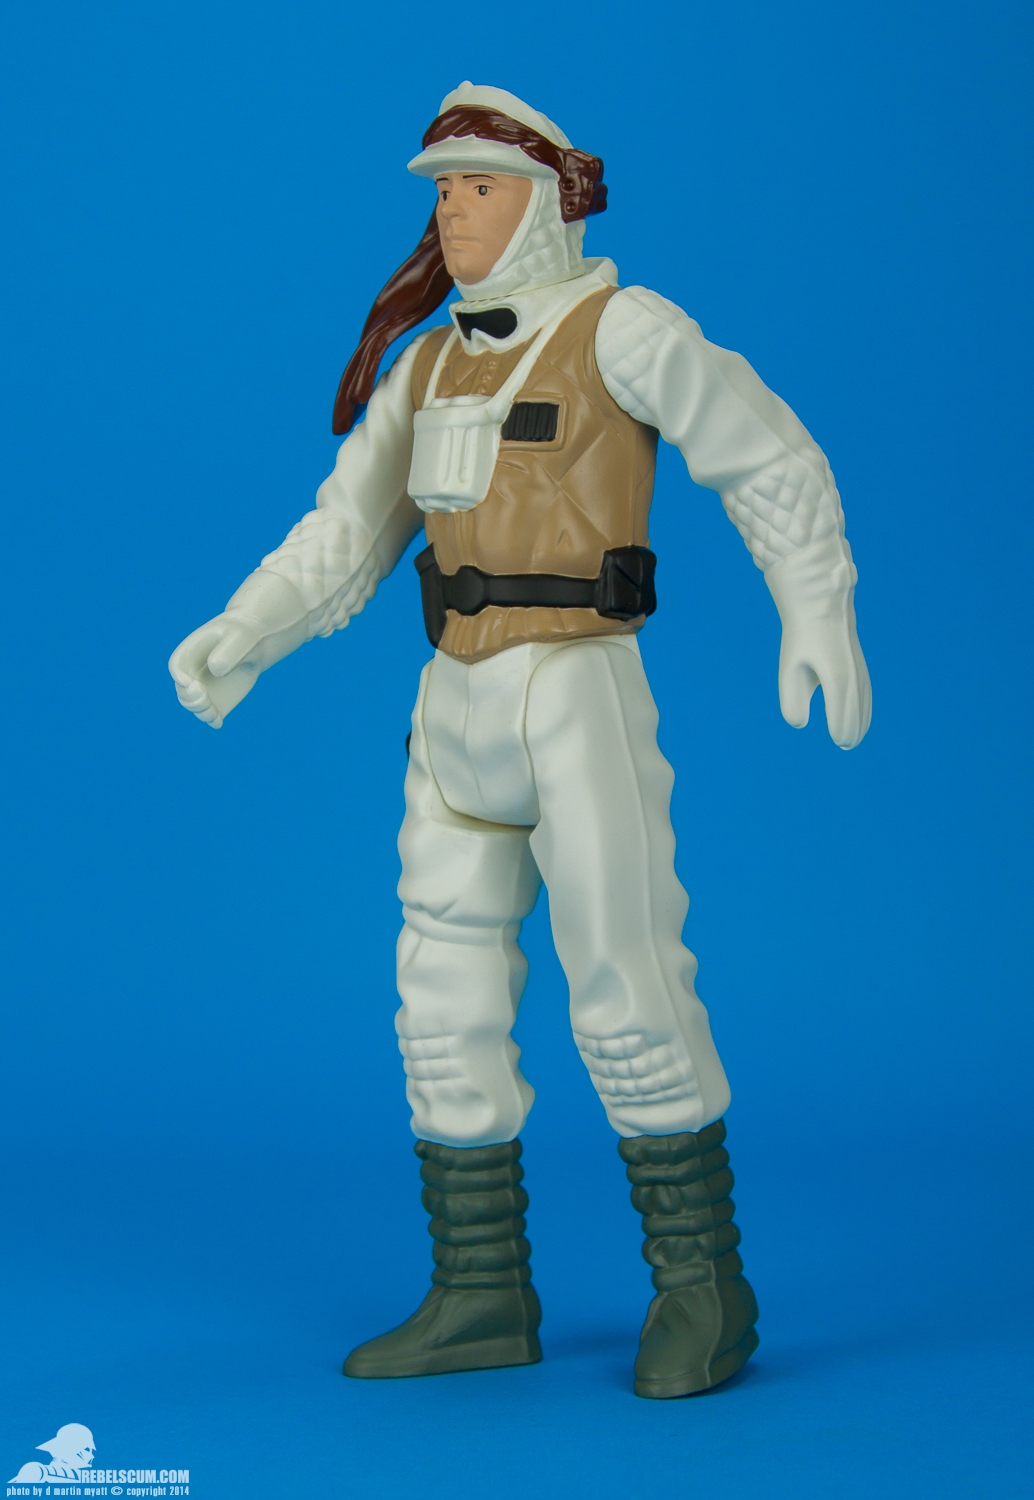 Luke-Skywalker-Hoth-Battle-Gear-Gentle-Giant-Ltd-Jumbo-Kenner-003.jpg